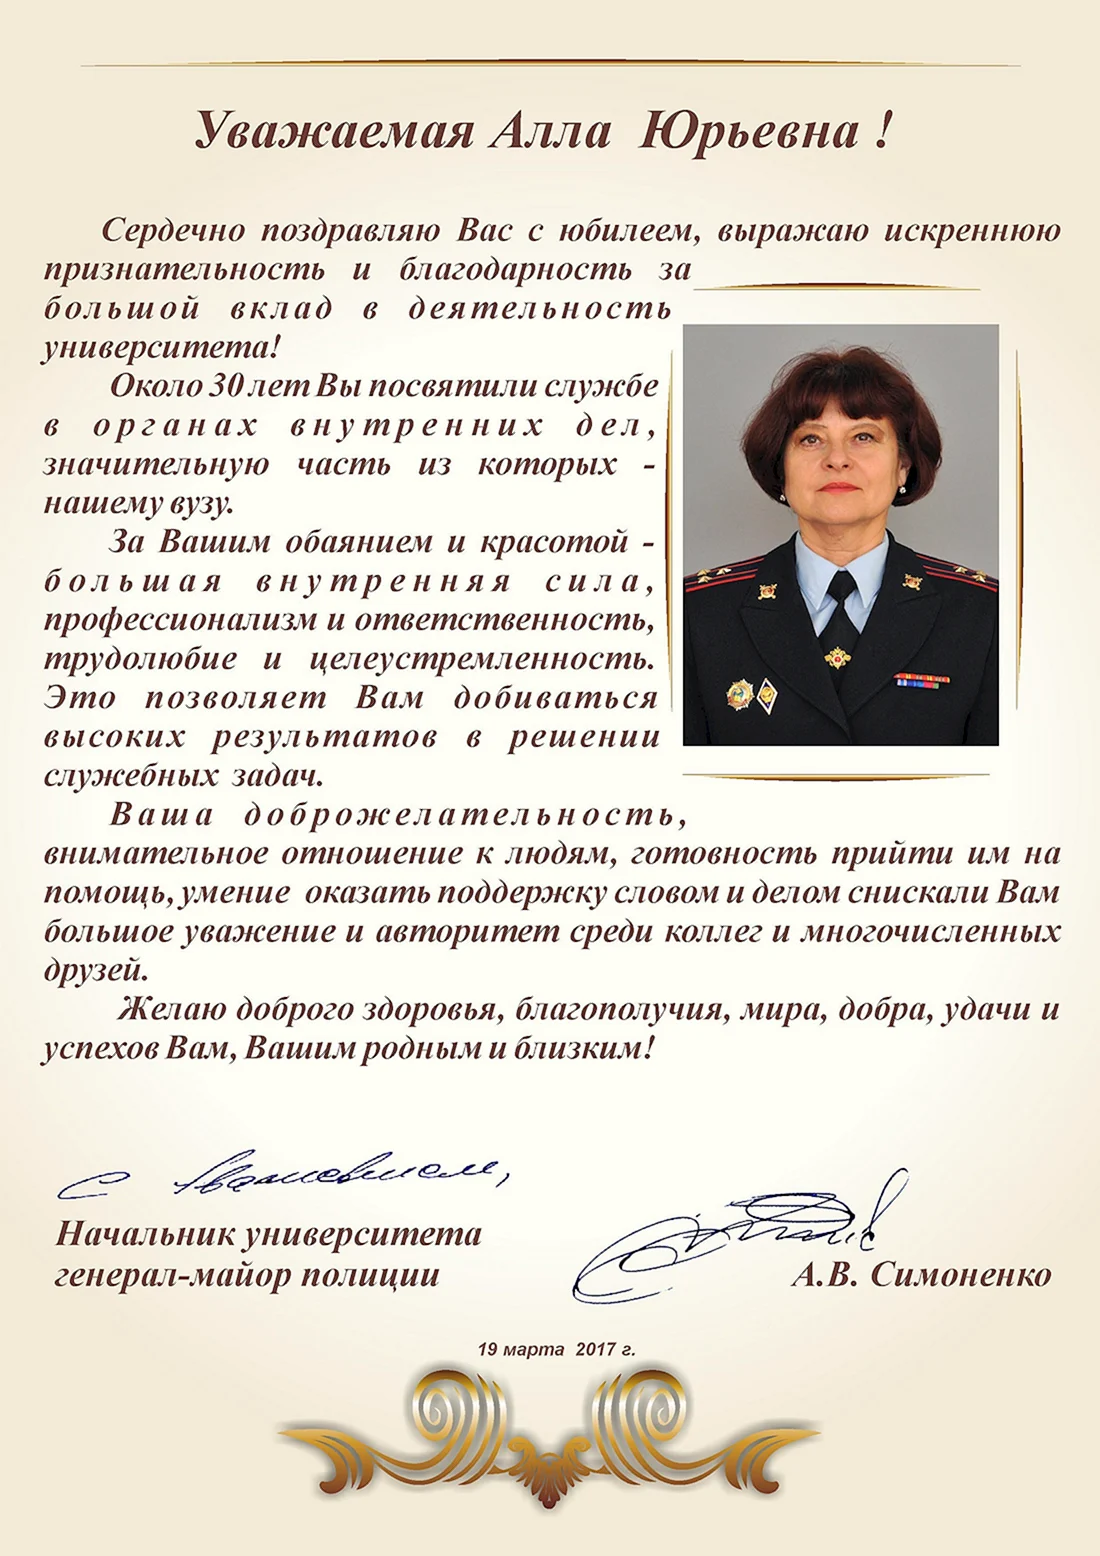 Поздравление с присвоением звания генерал-майор полиции